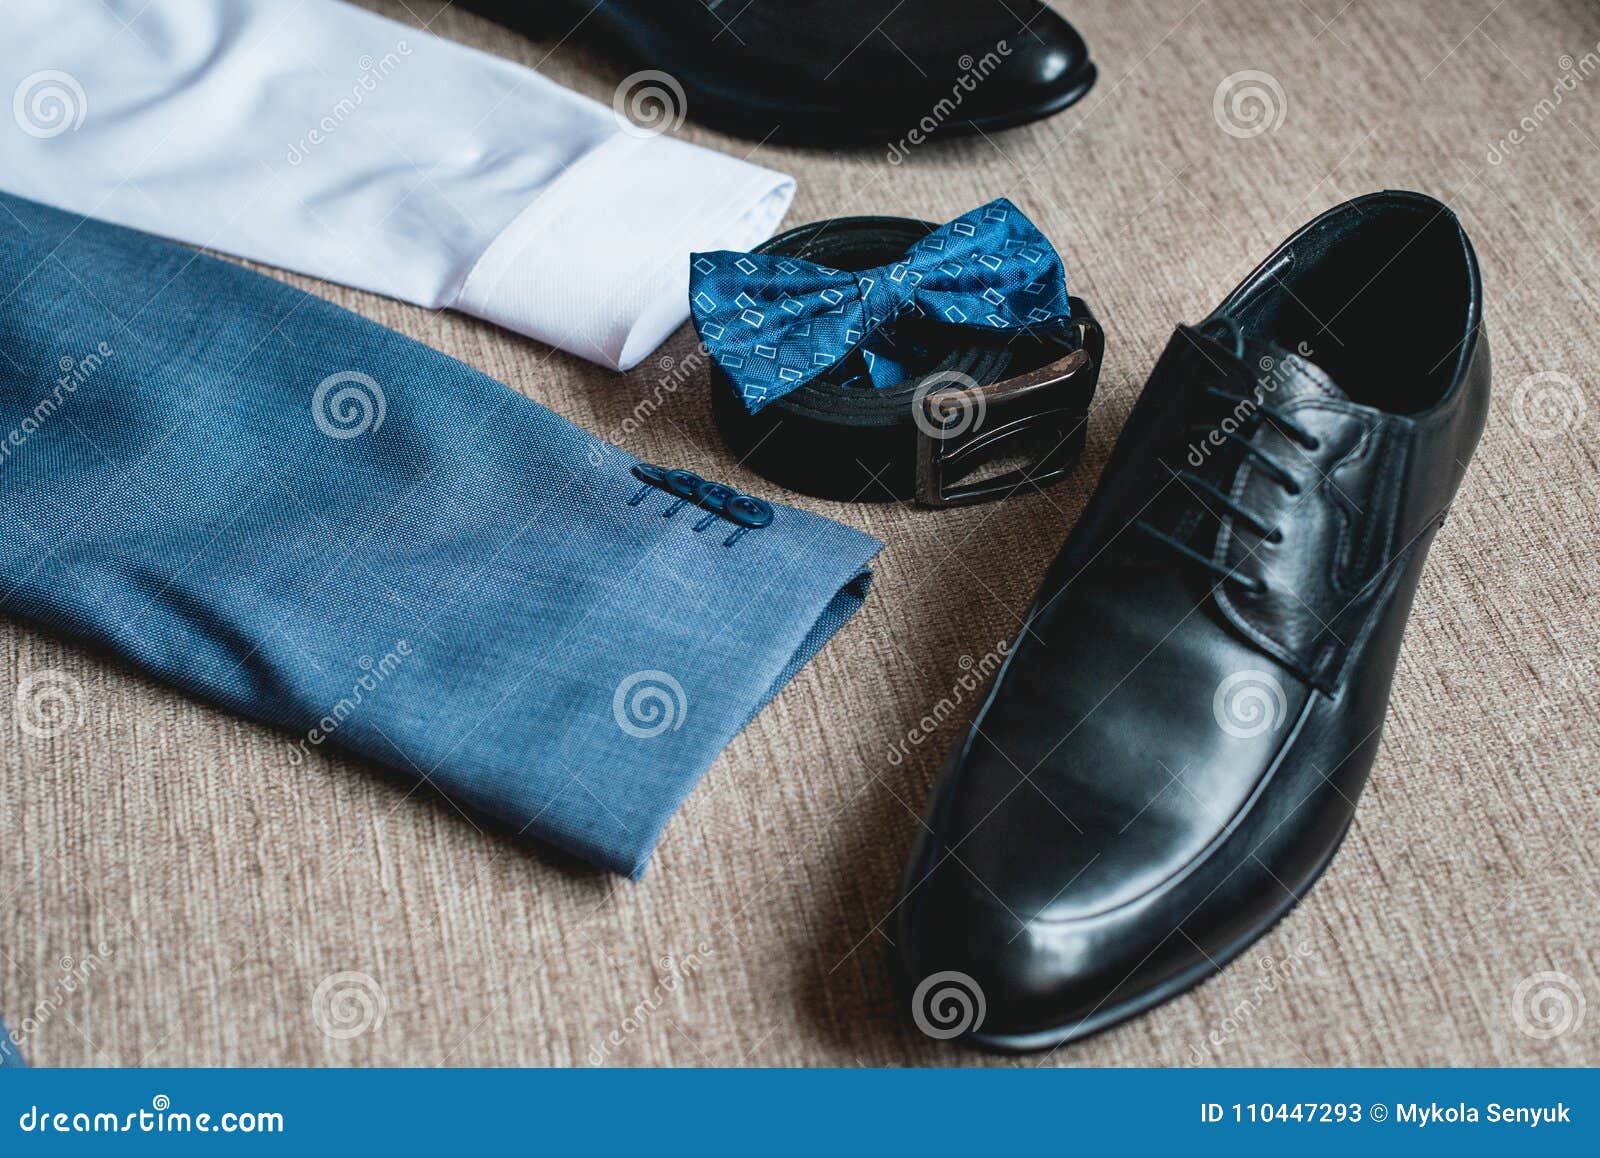 Traje, Corbata De Lazo Azul, Zapatos Negros De Cuero Novios Que Se Casan Mañana Ciérrese Arriba De Los Accesorios D de archivo - Imagen de mariposa, colonia: 110447293